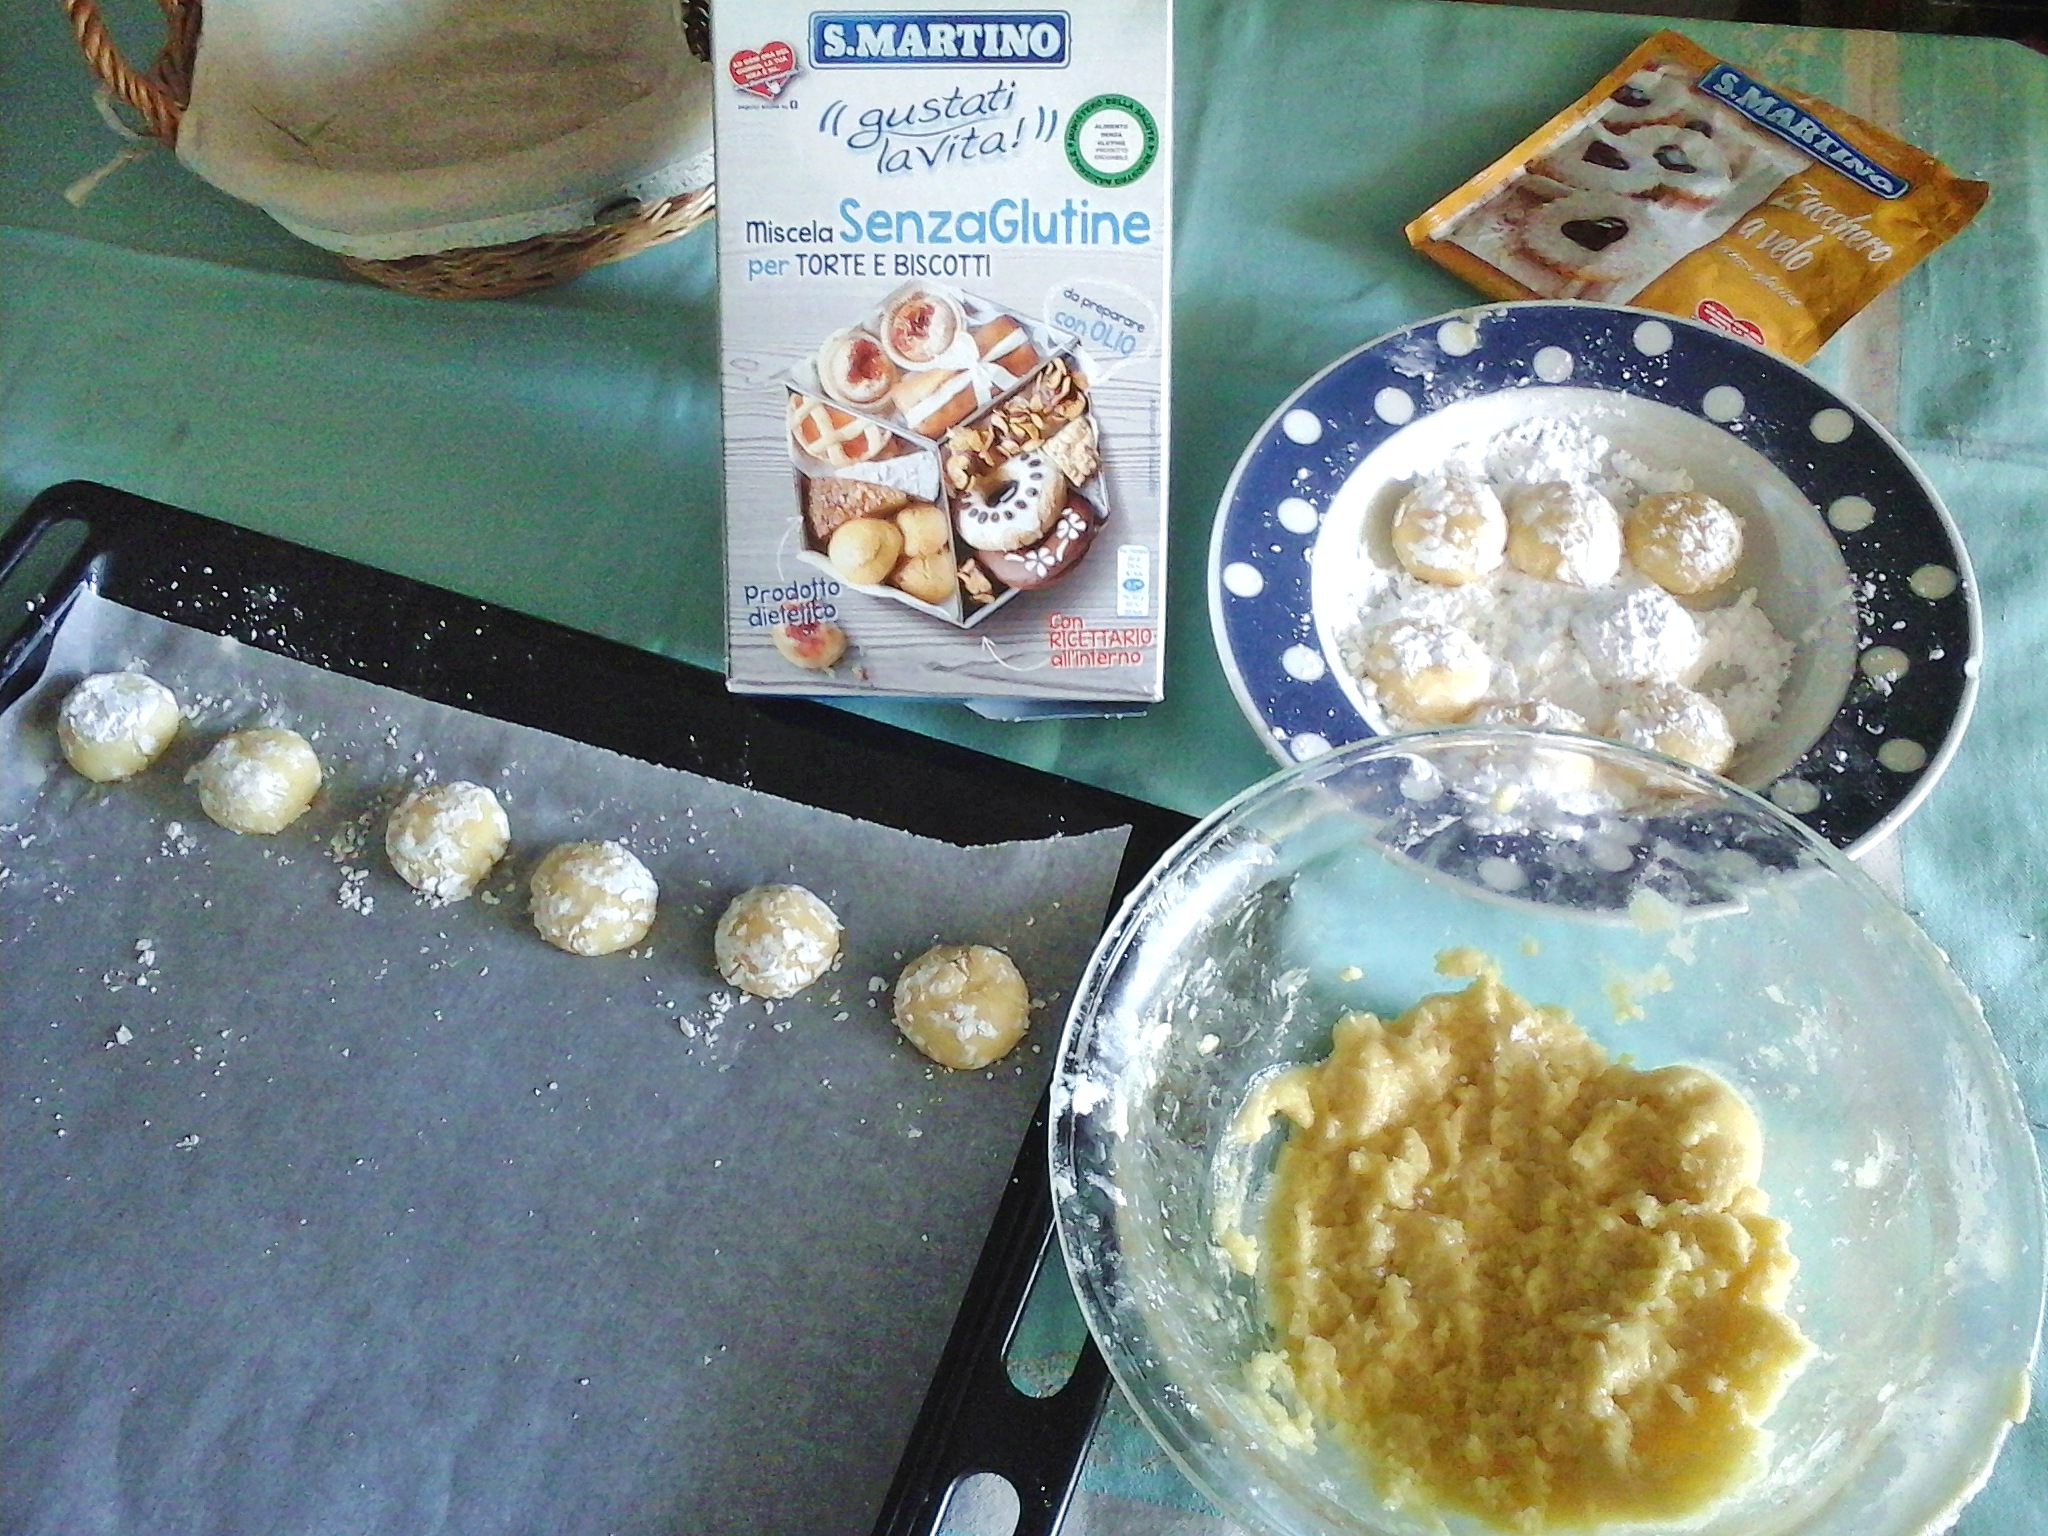 Biscotti senza glutine per la colazione, con miele, ho usato la favolosa Miscela senza glutine per torte e biscotti S.Martino.